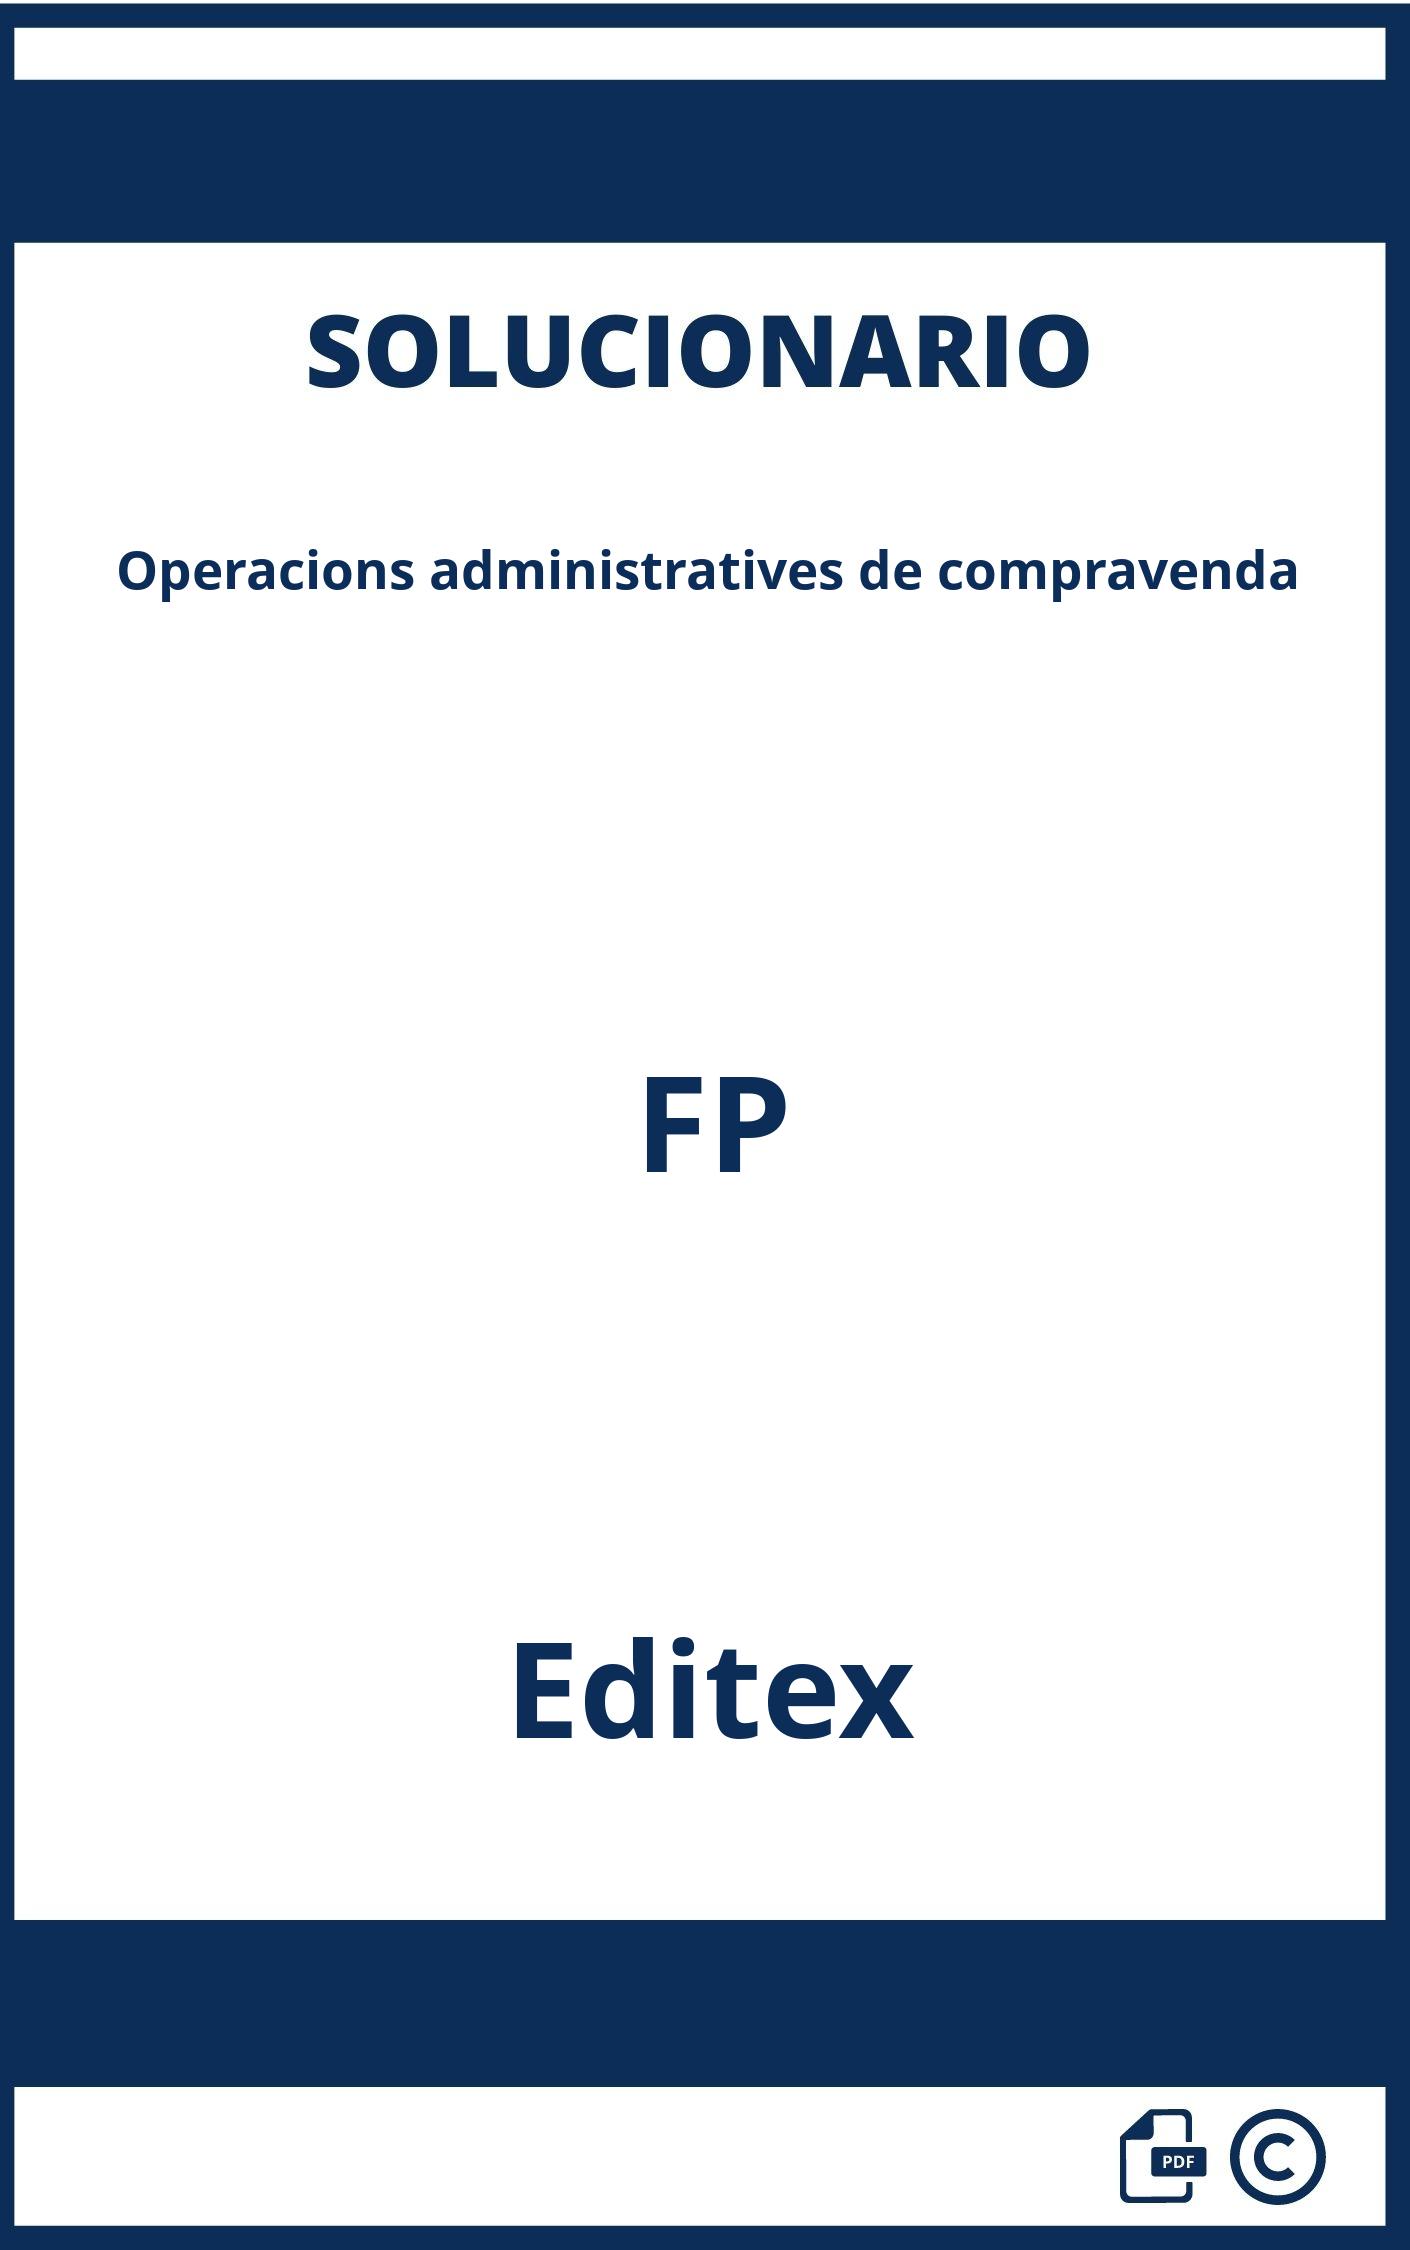 Solucionario Operacions administratives de compravenda FP Editex